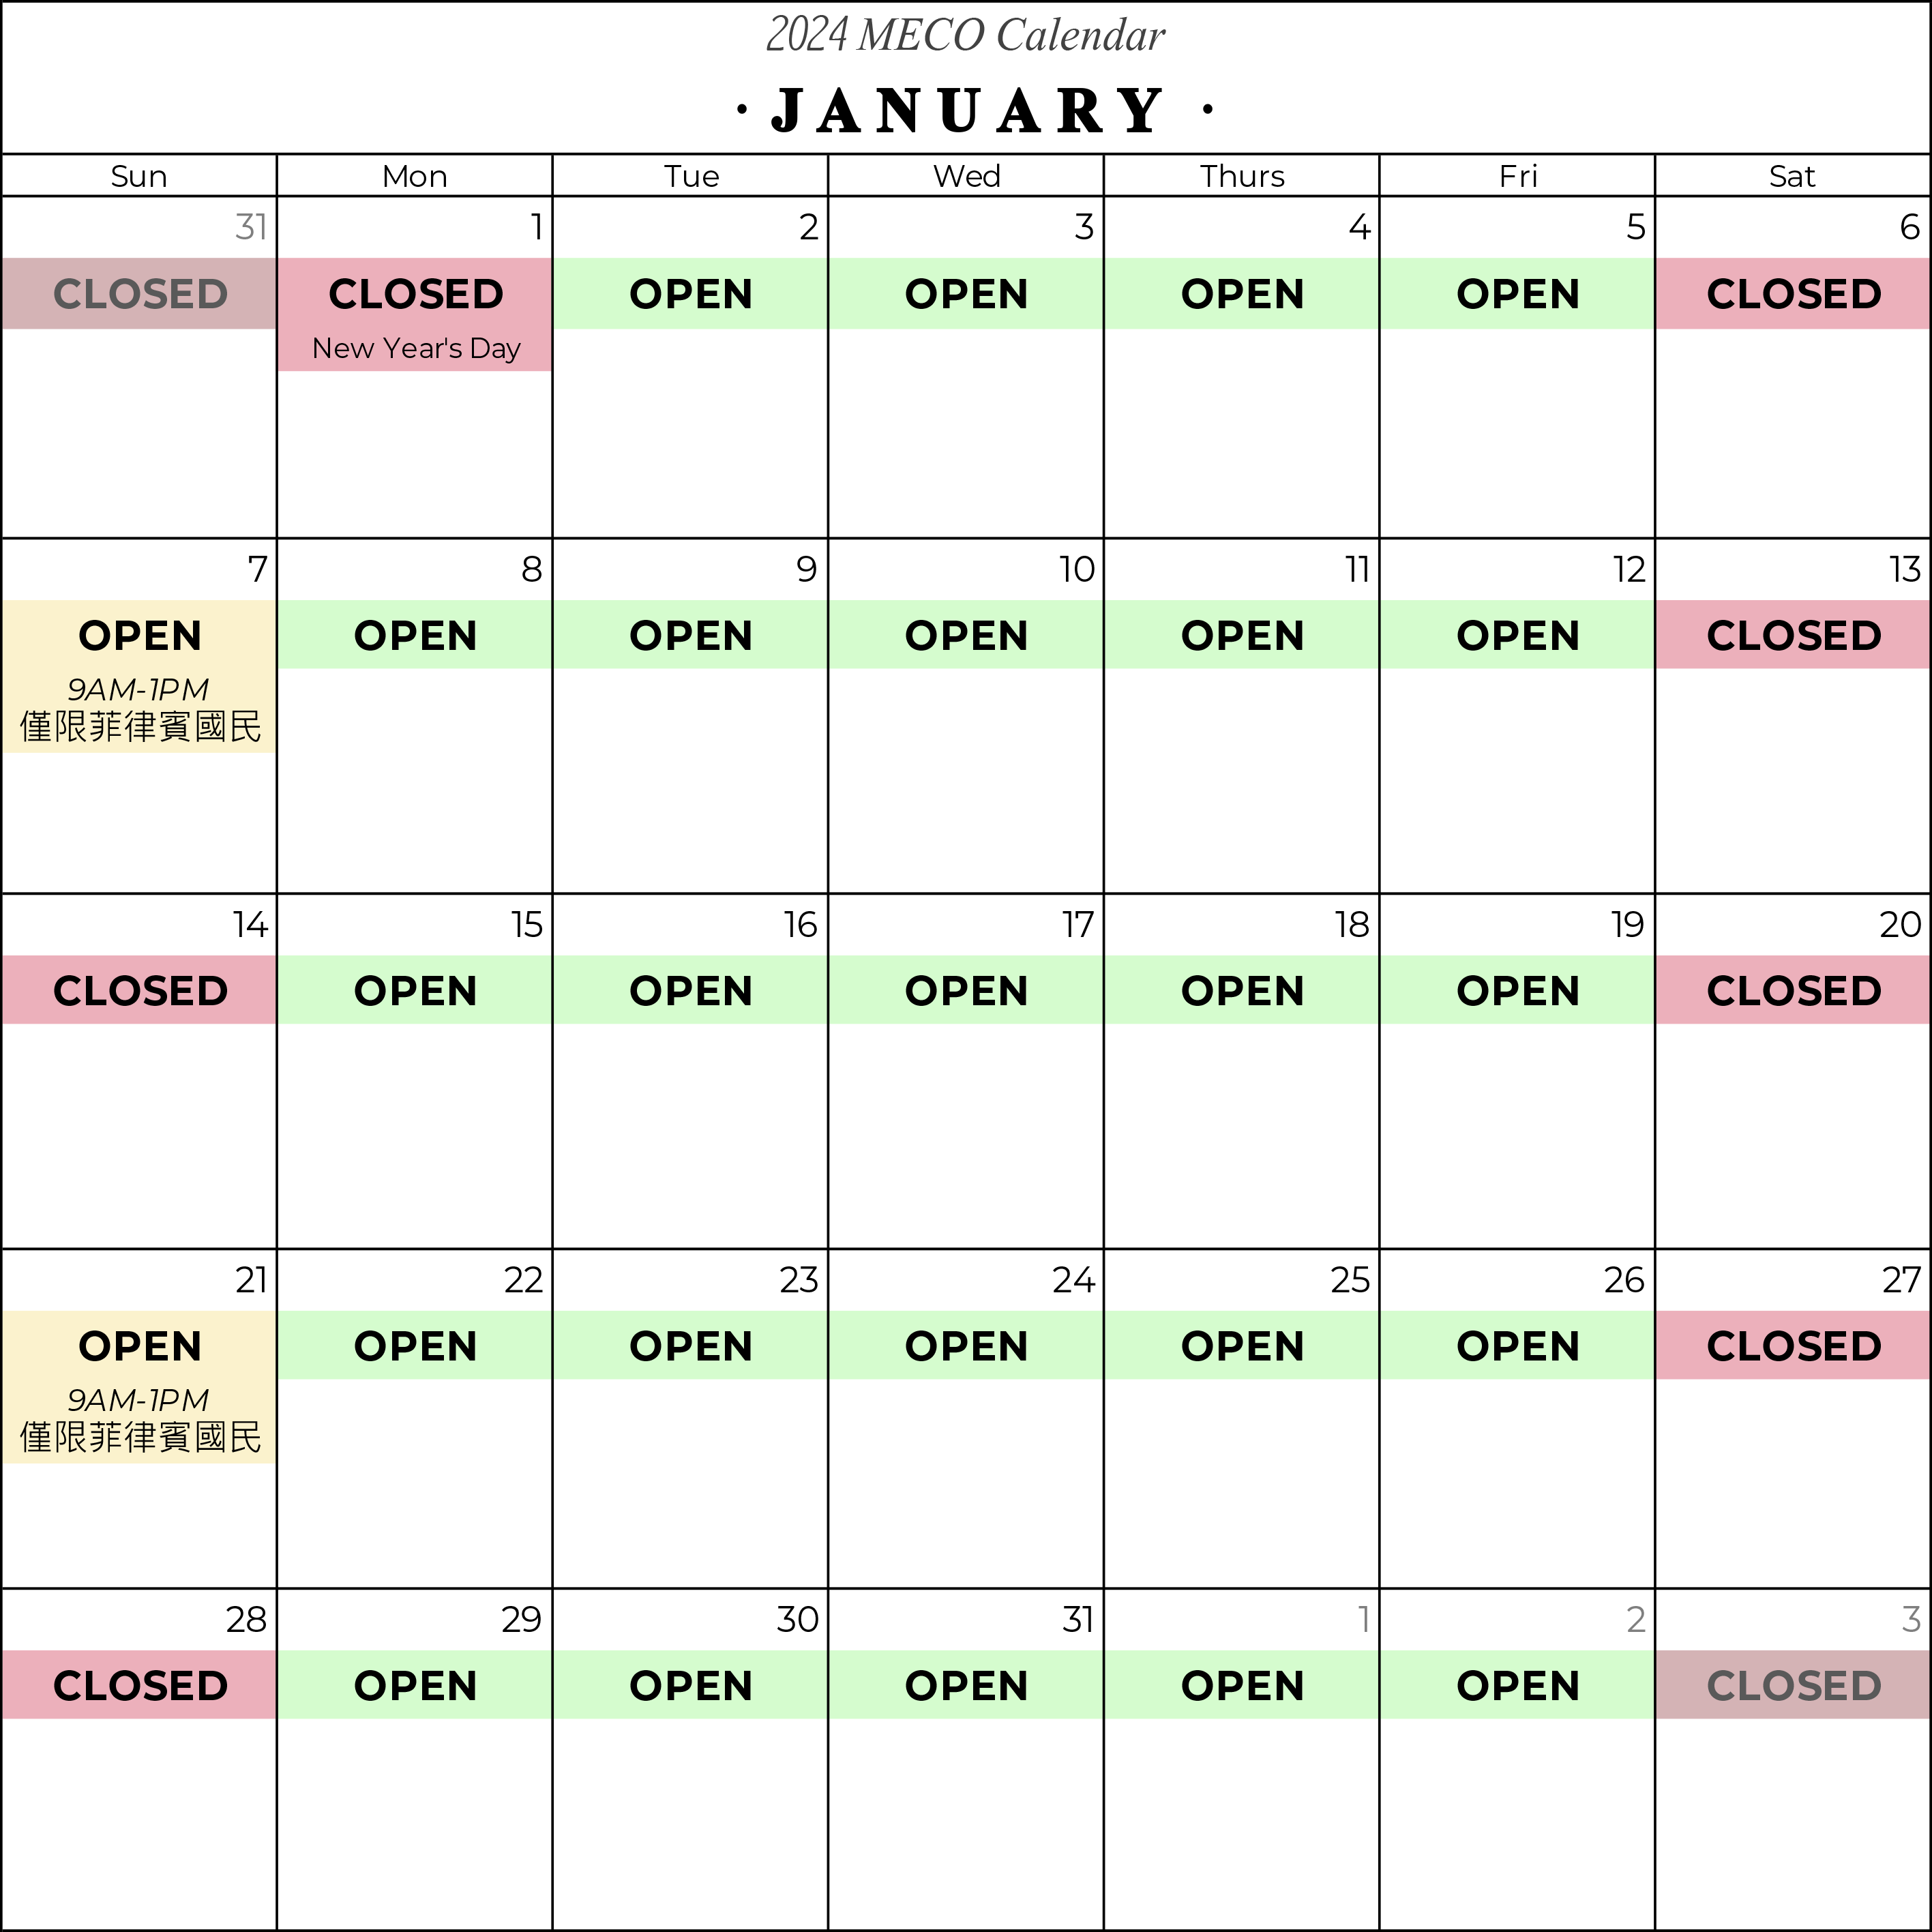 January 2024 Calendar.png